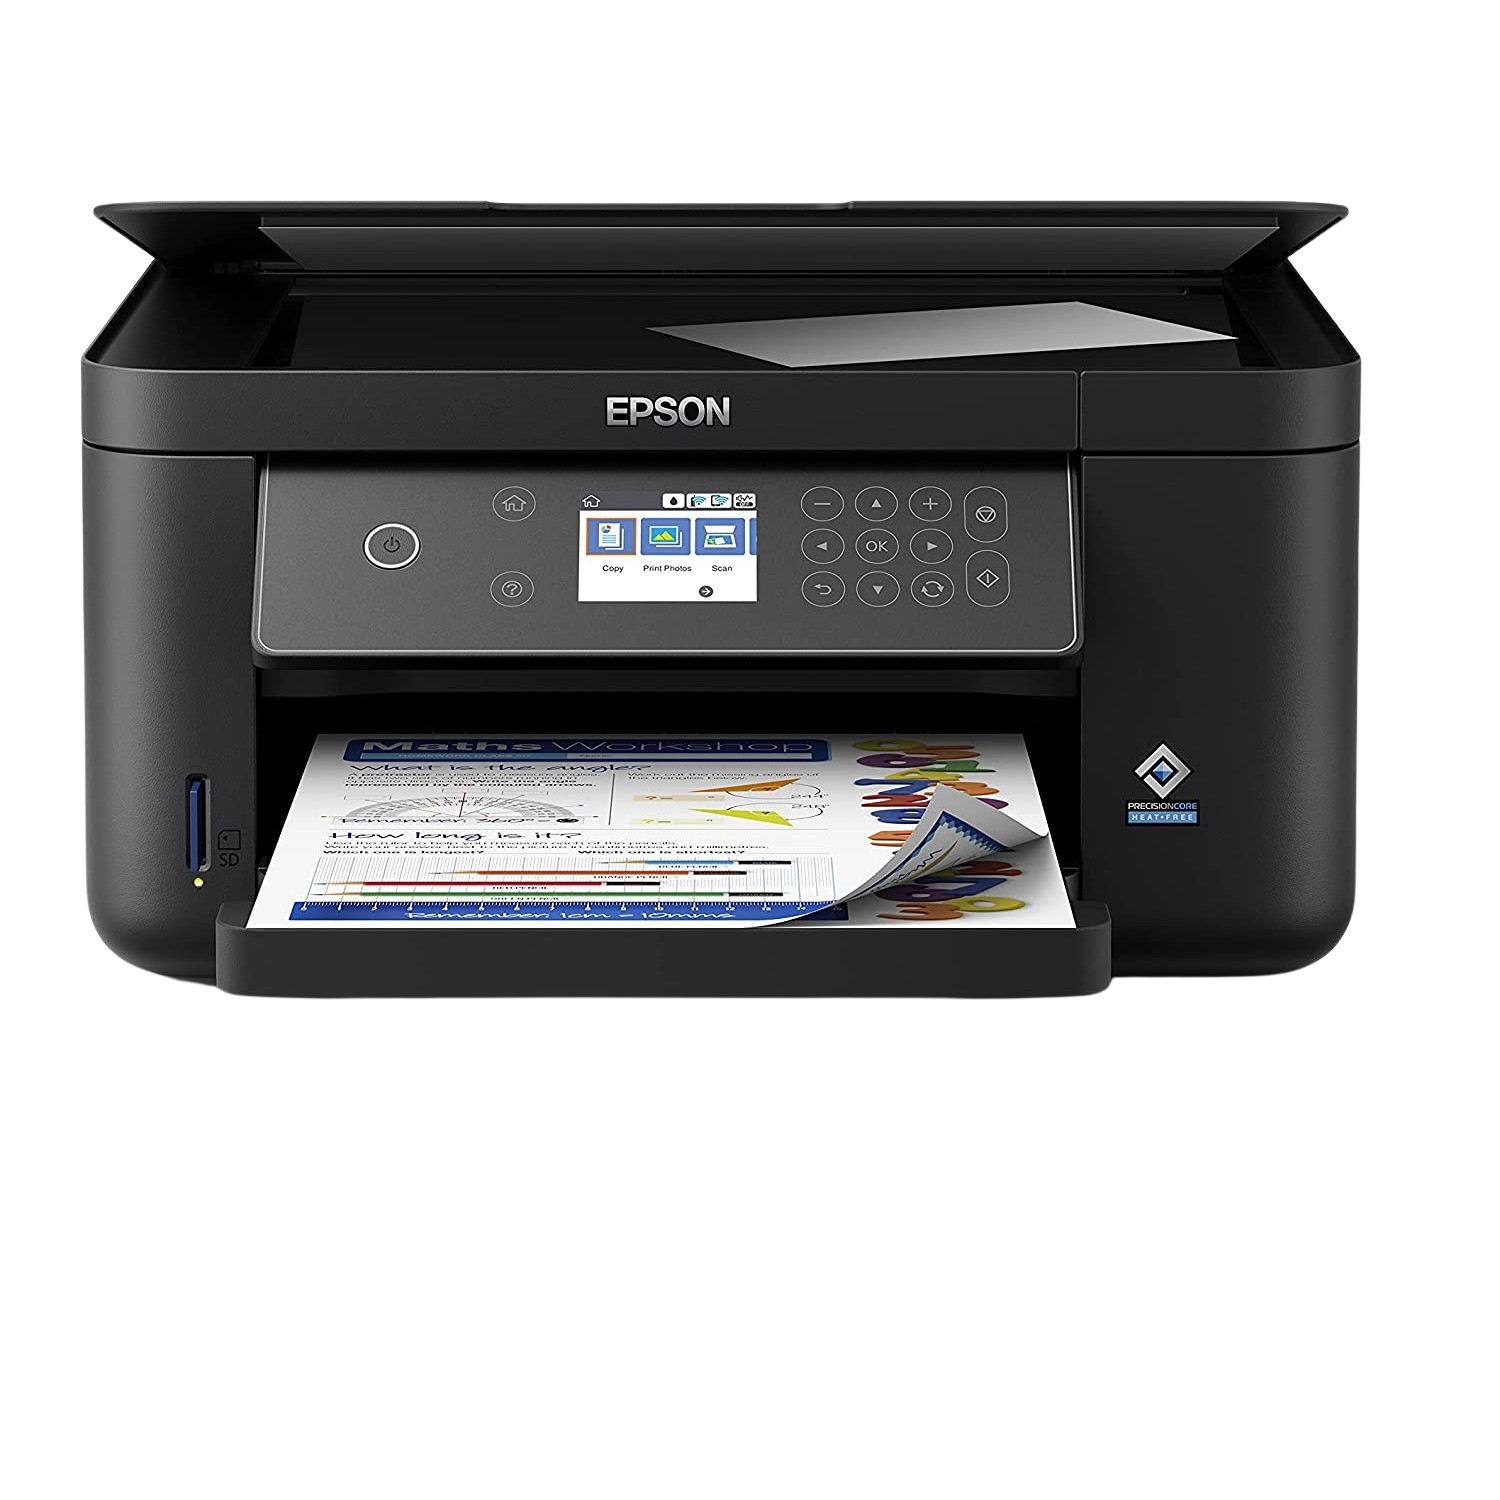 Impresora Epson Expression home xp5150 wifi a4 con doble cara y pantalla lcd bandejas papel delantera trasera 3en1 copiadora mobile printing tinta ‎epson 33 ppm 20